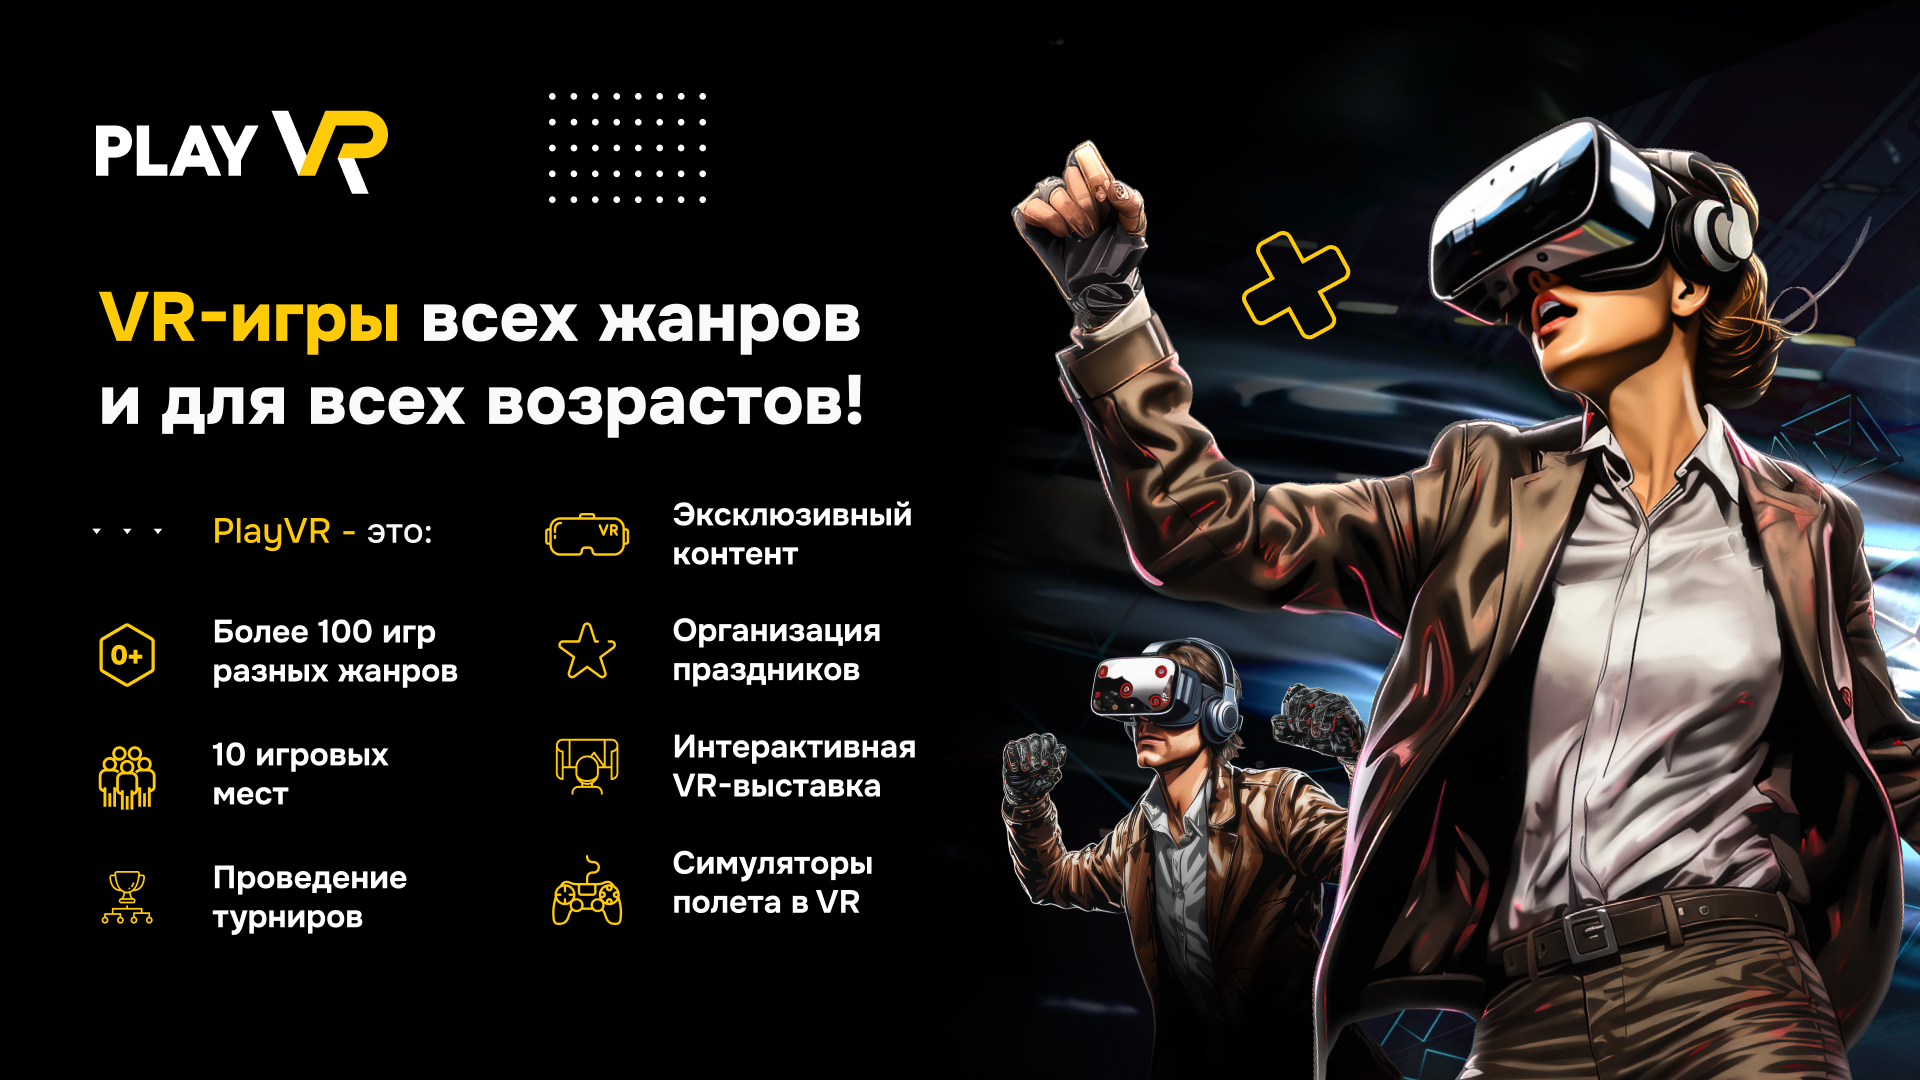 Одна из самых крупных сетей развлекательных залов виртуальной реальности в России и мире.